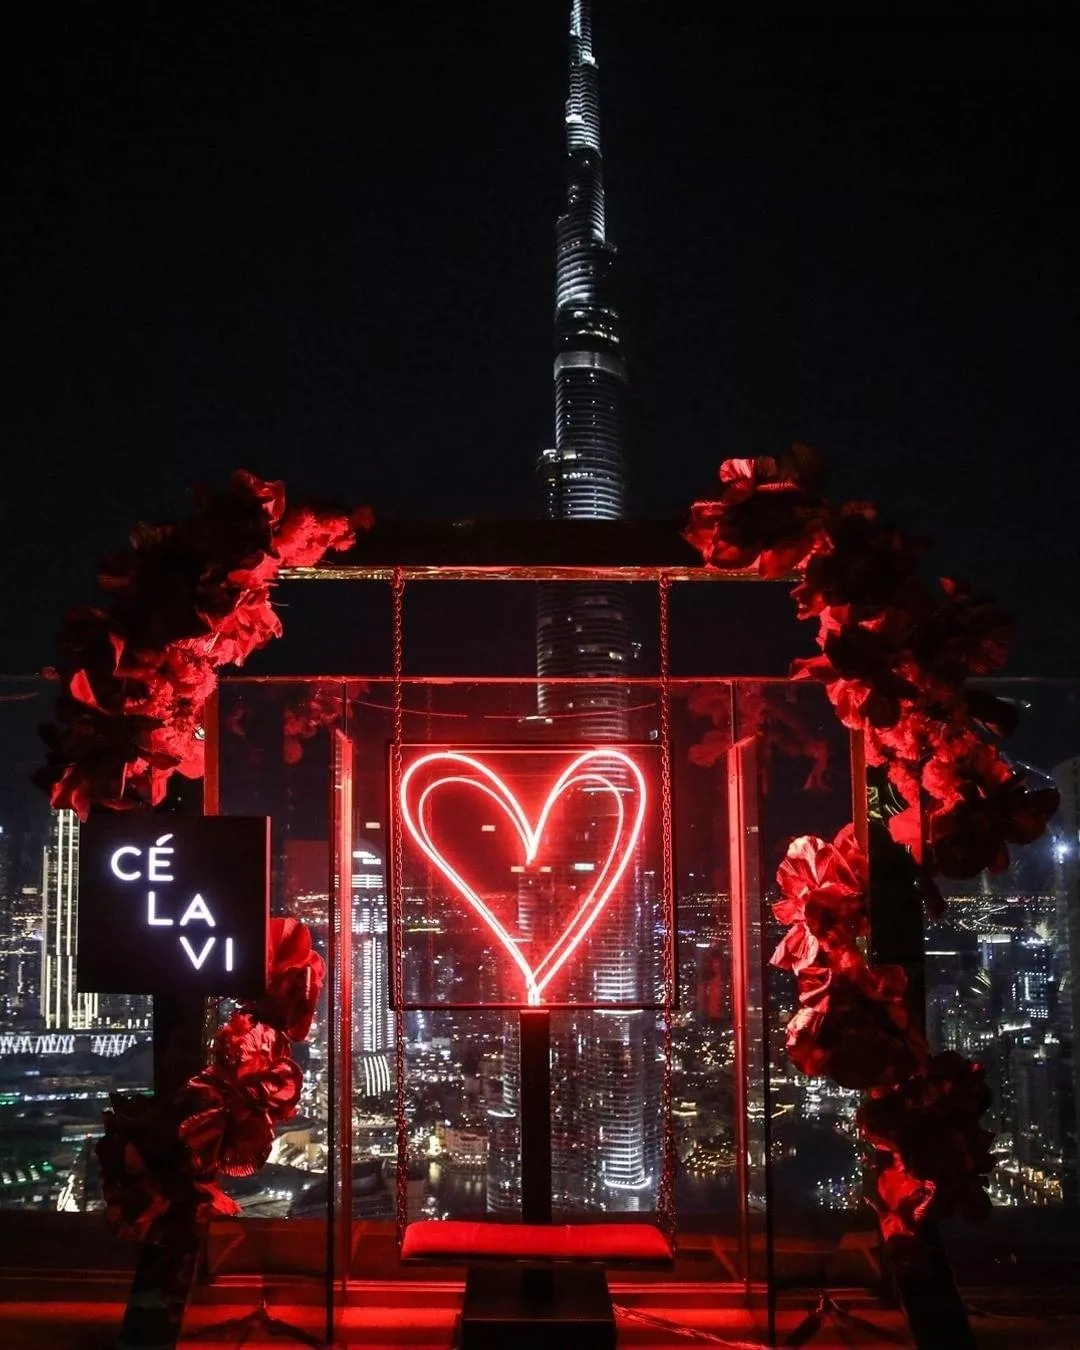 أبرز عروض عيد الحب في دبي لعام 2021، لتستمتعي مع زوجكِ في هذه المناسبة الرومانسية